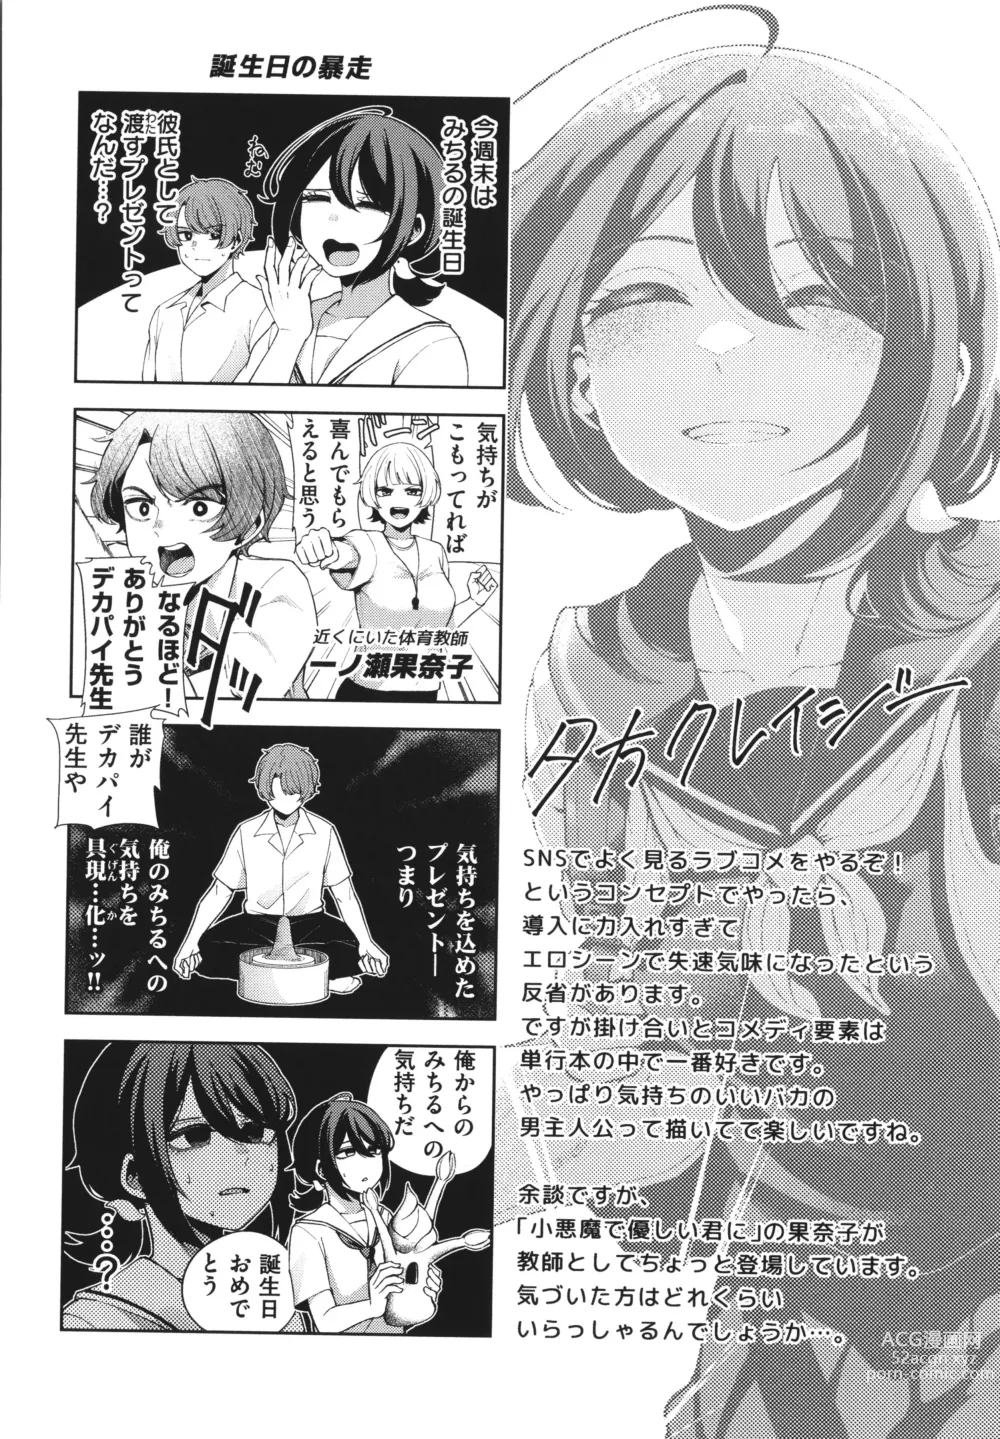 Page 156 of manga Watashi de Sometai